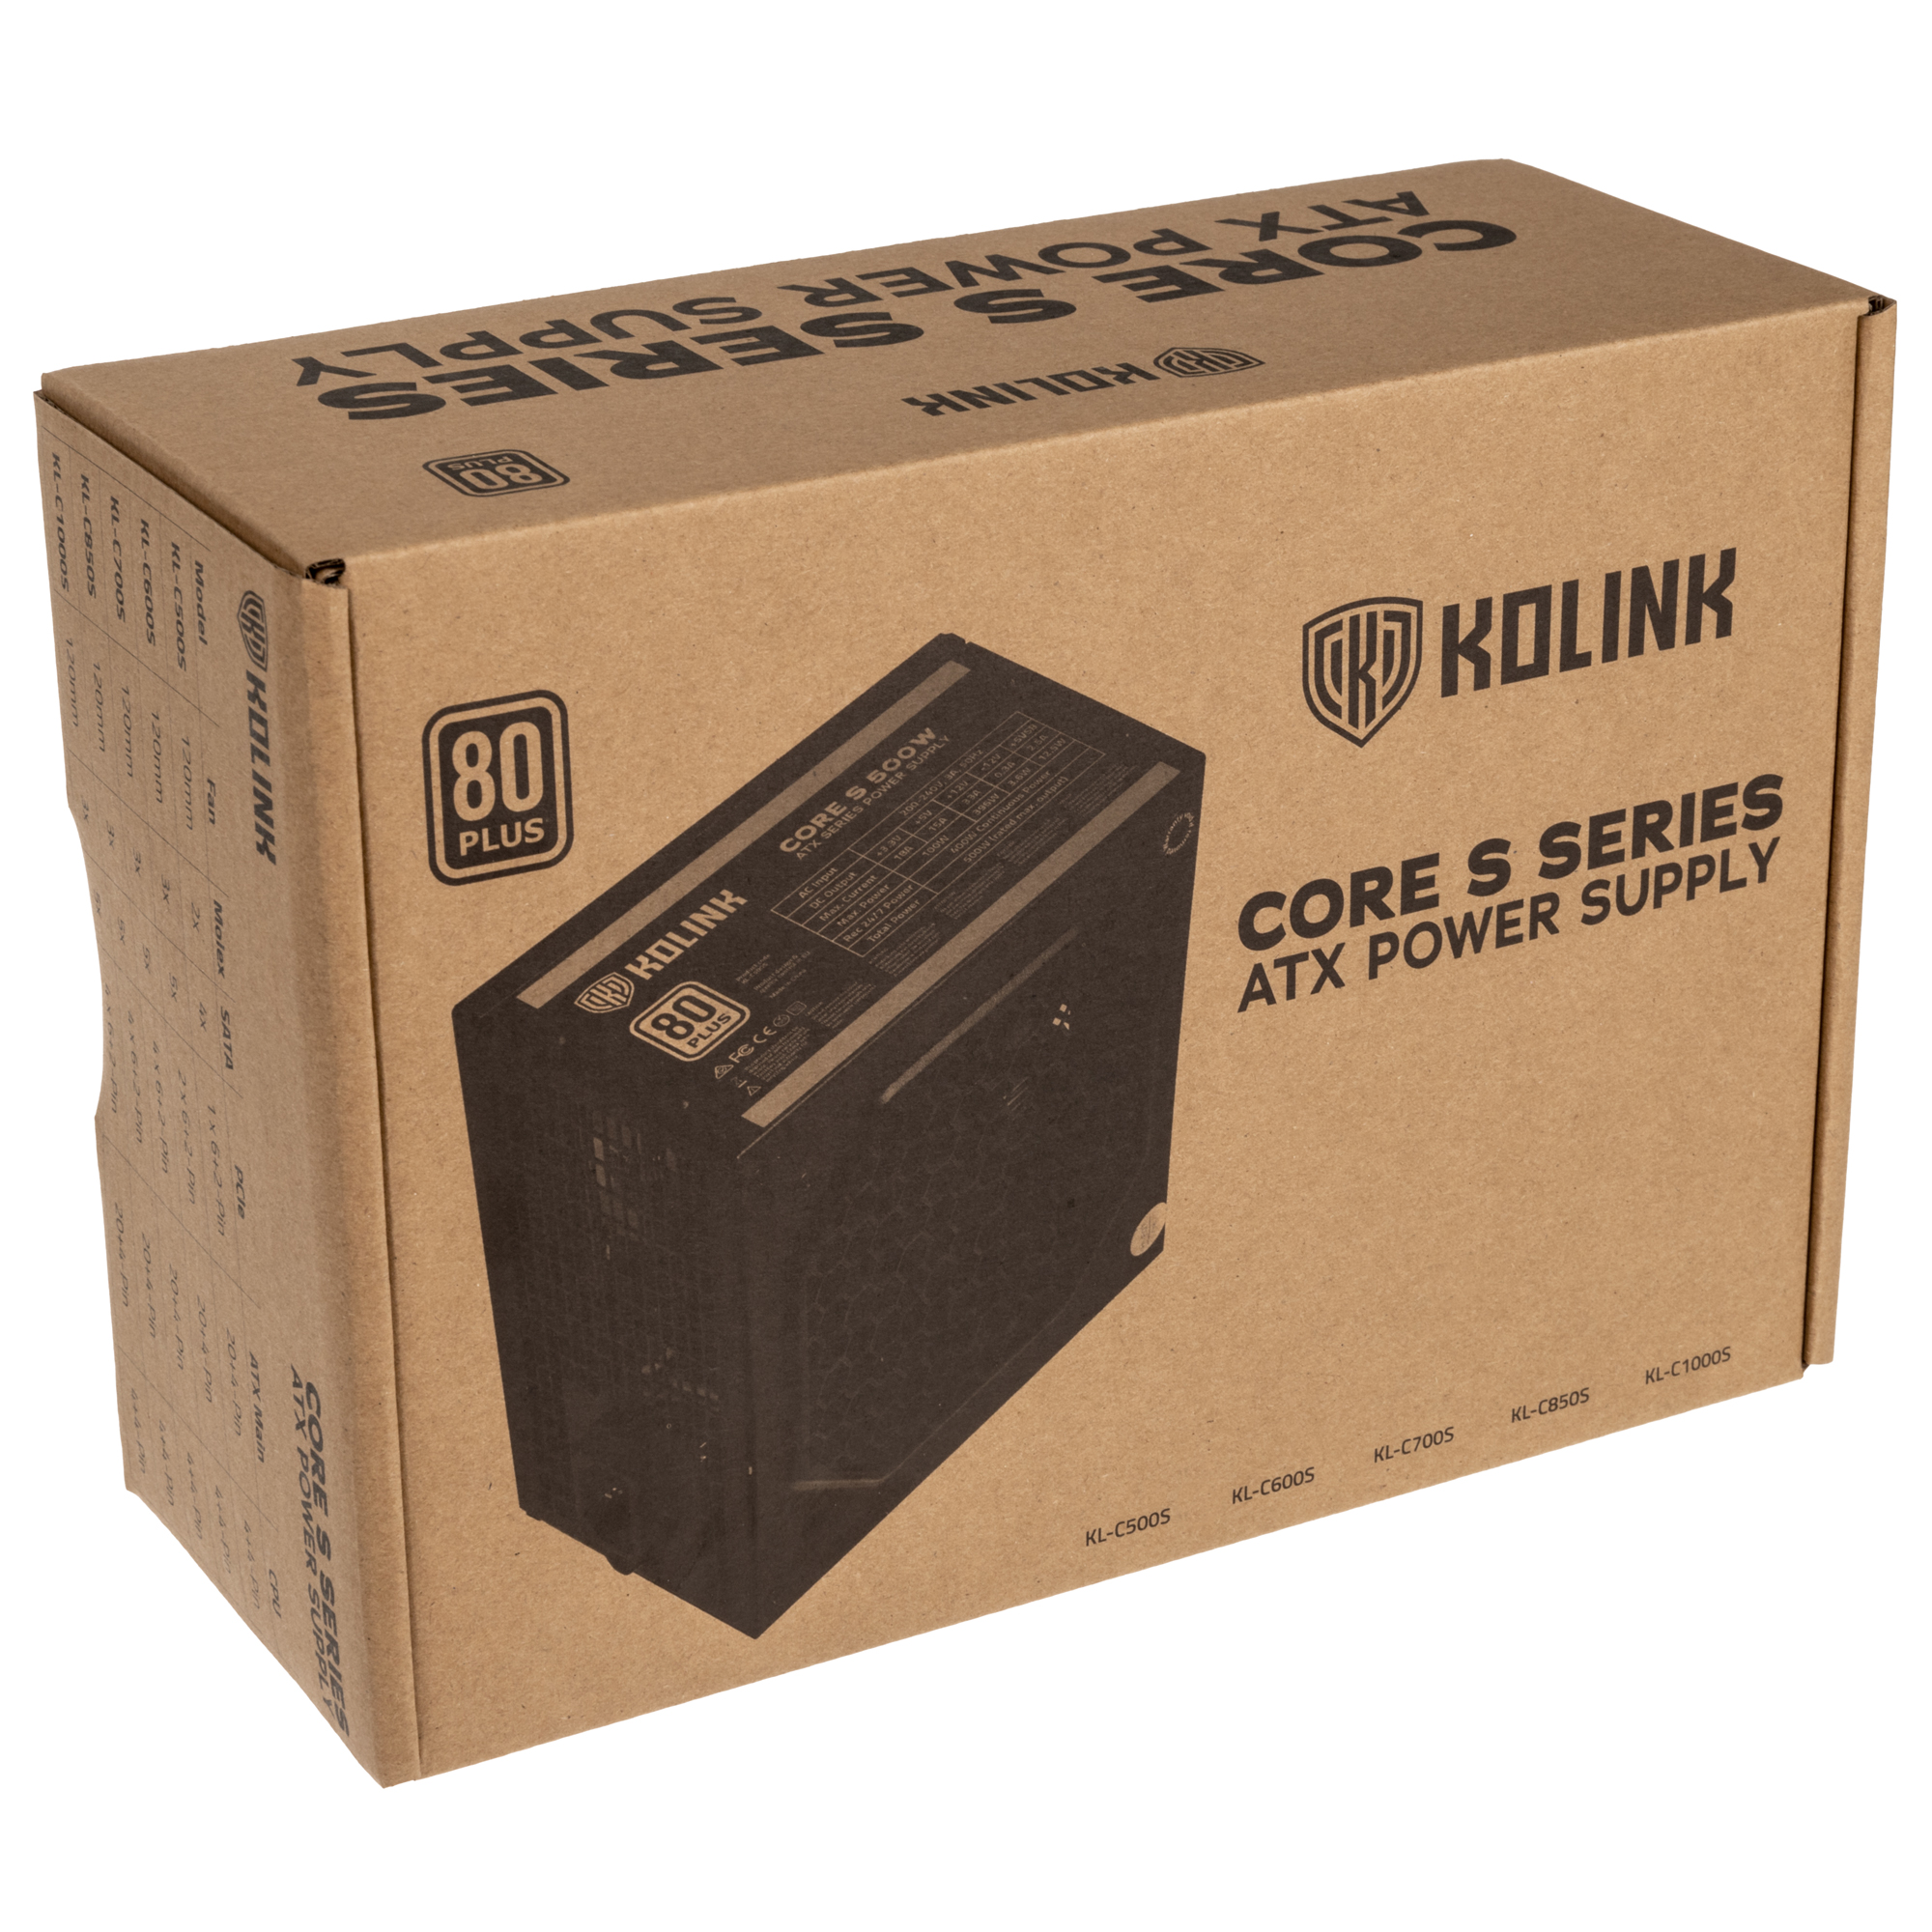 Kolink - Kolink Core S Series 500W 80 Plus Certified Power Supply